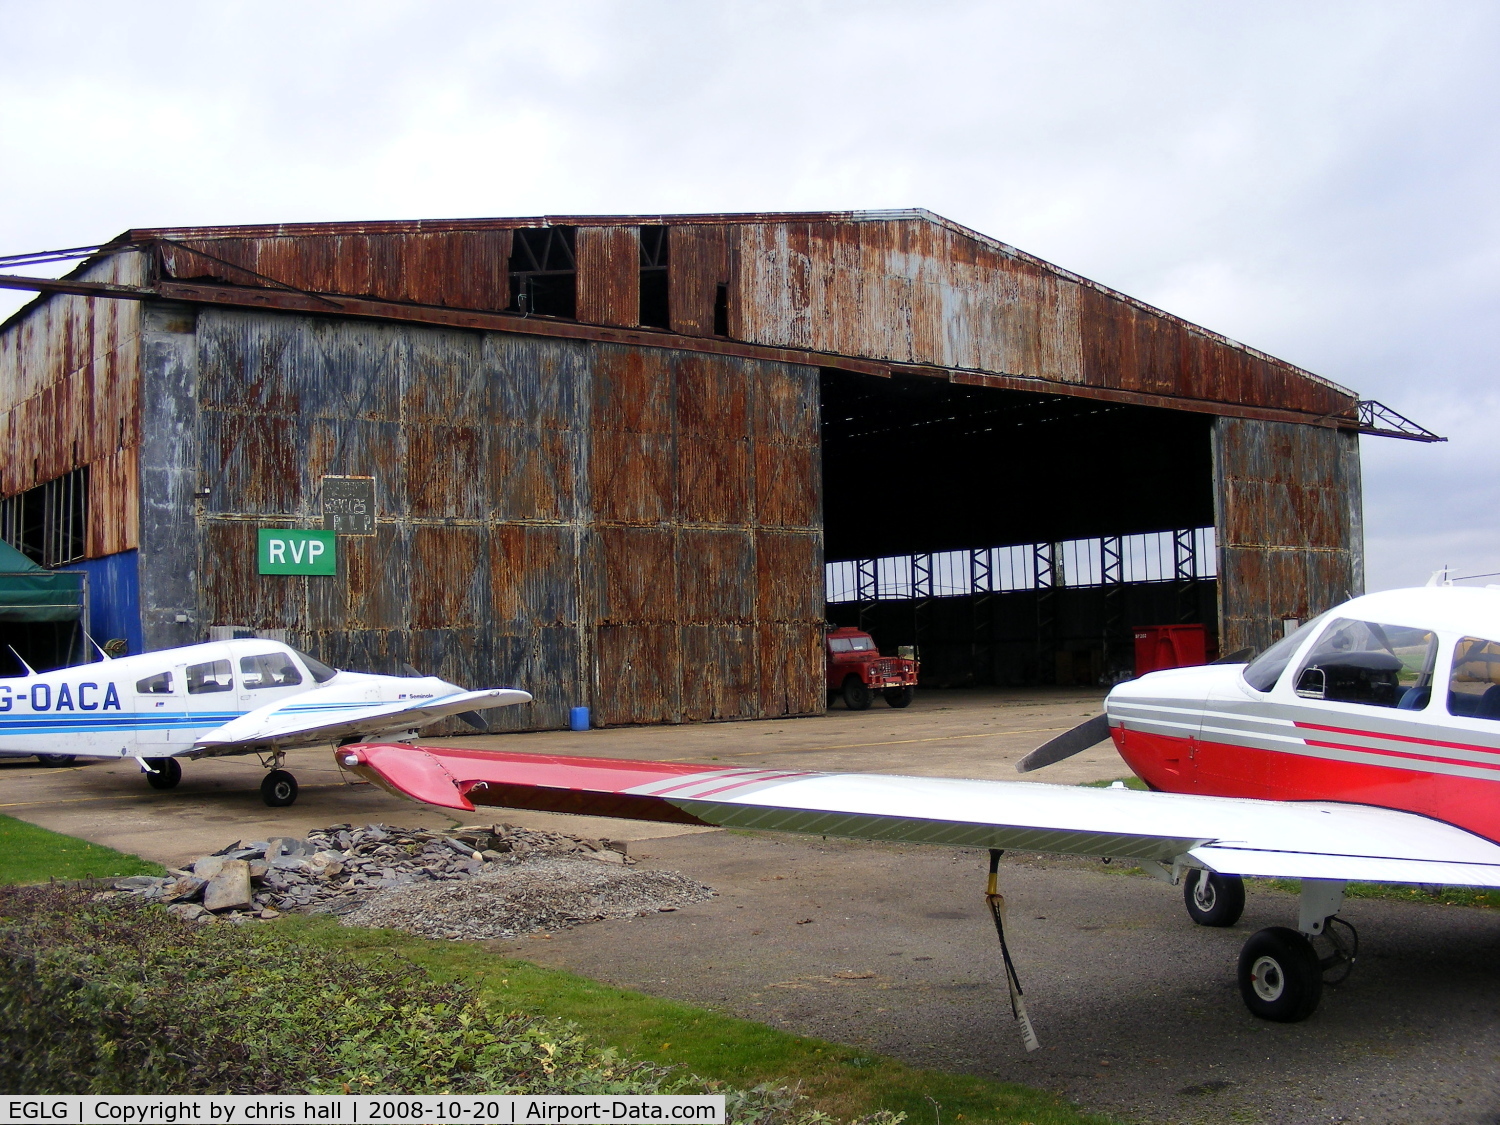 Panshanger Airport, Hertford, England United Kingdom (EGLG) - The Hangar at Panshangar